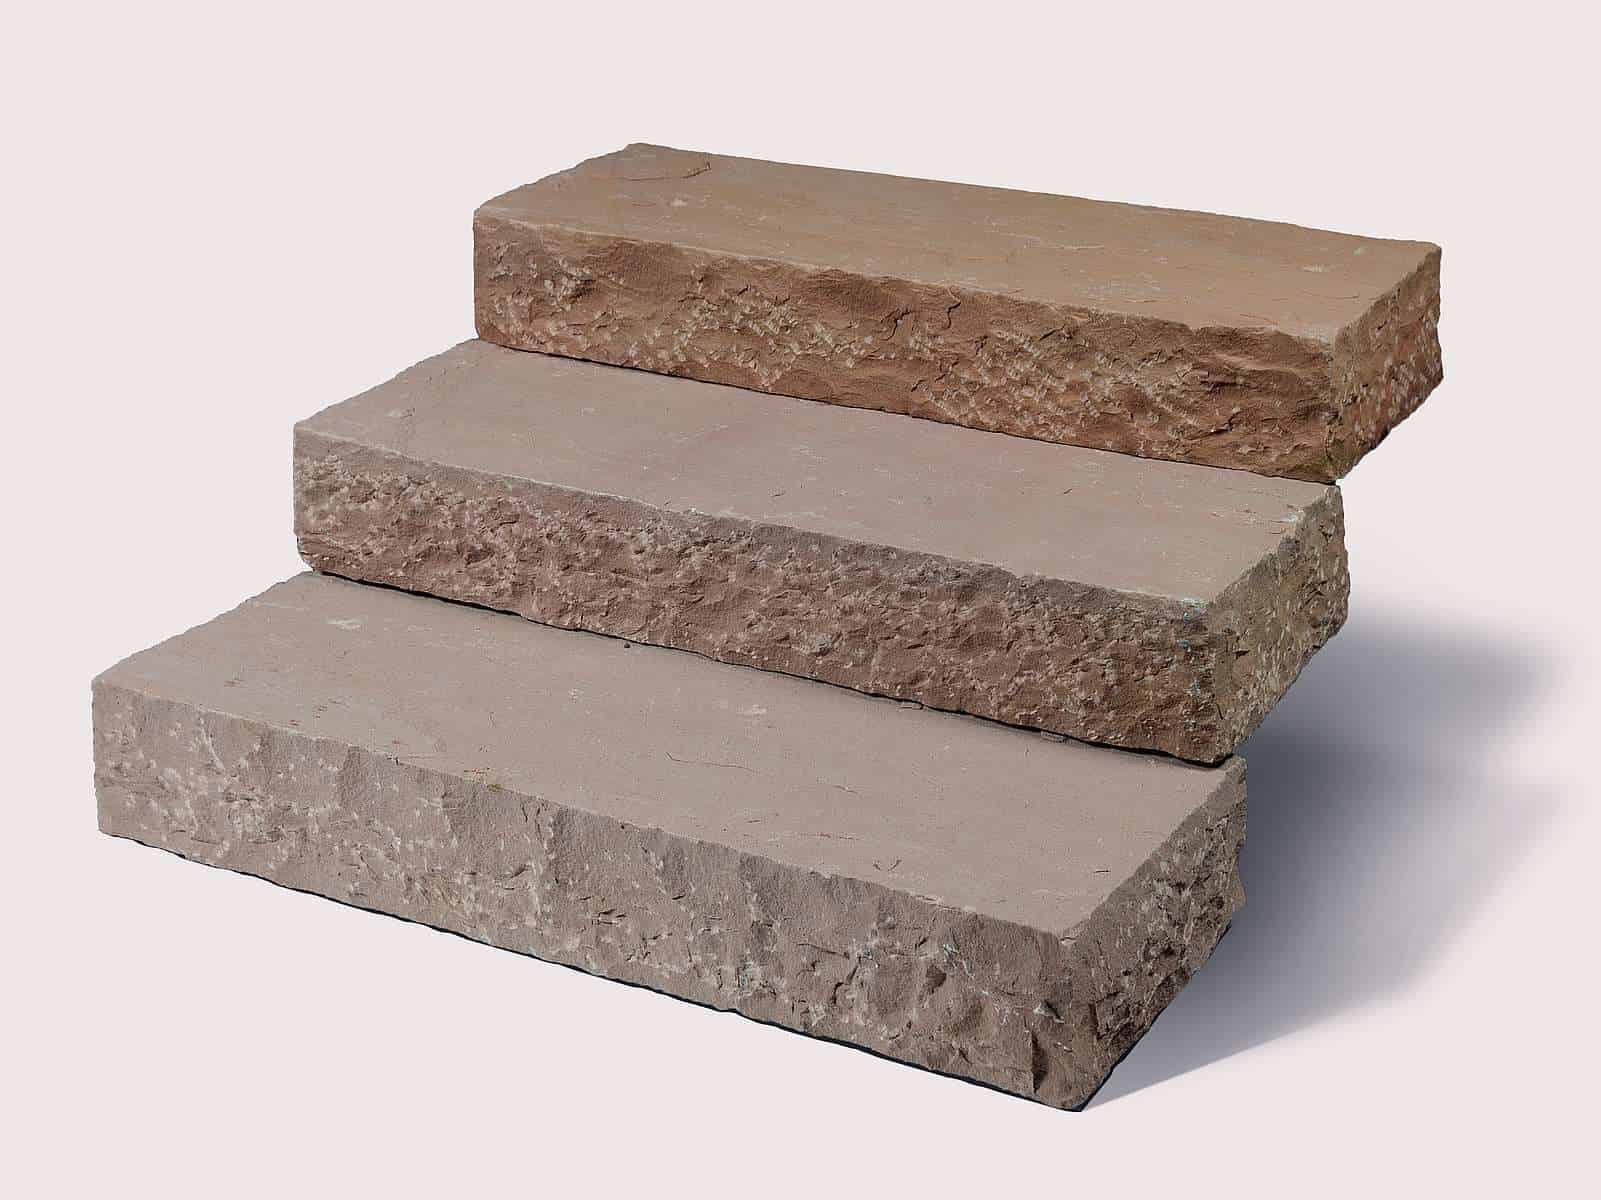 Blockstufe Toskana Sandstein mit gespaltener Oberfläche in hochwertigem Toskana Sandstein/Quarzit. Die Sandsteinblockstufen sind absolut robust und pflegeleicht.